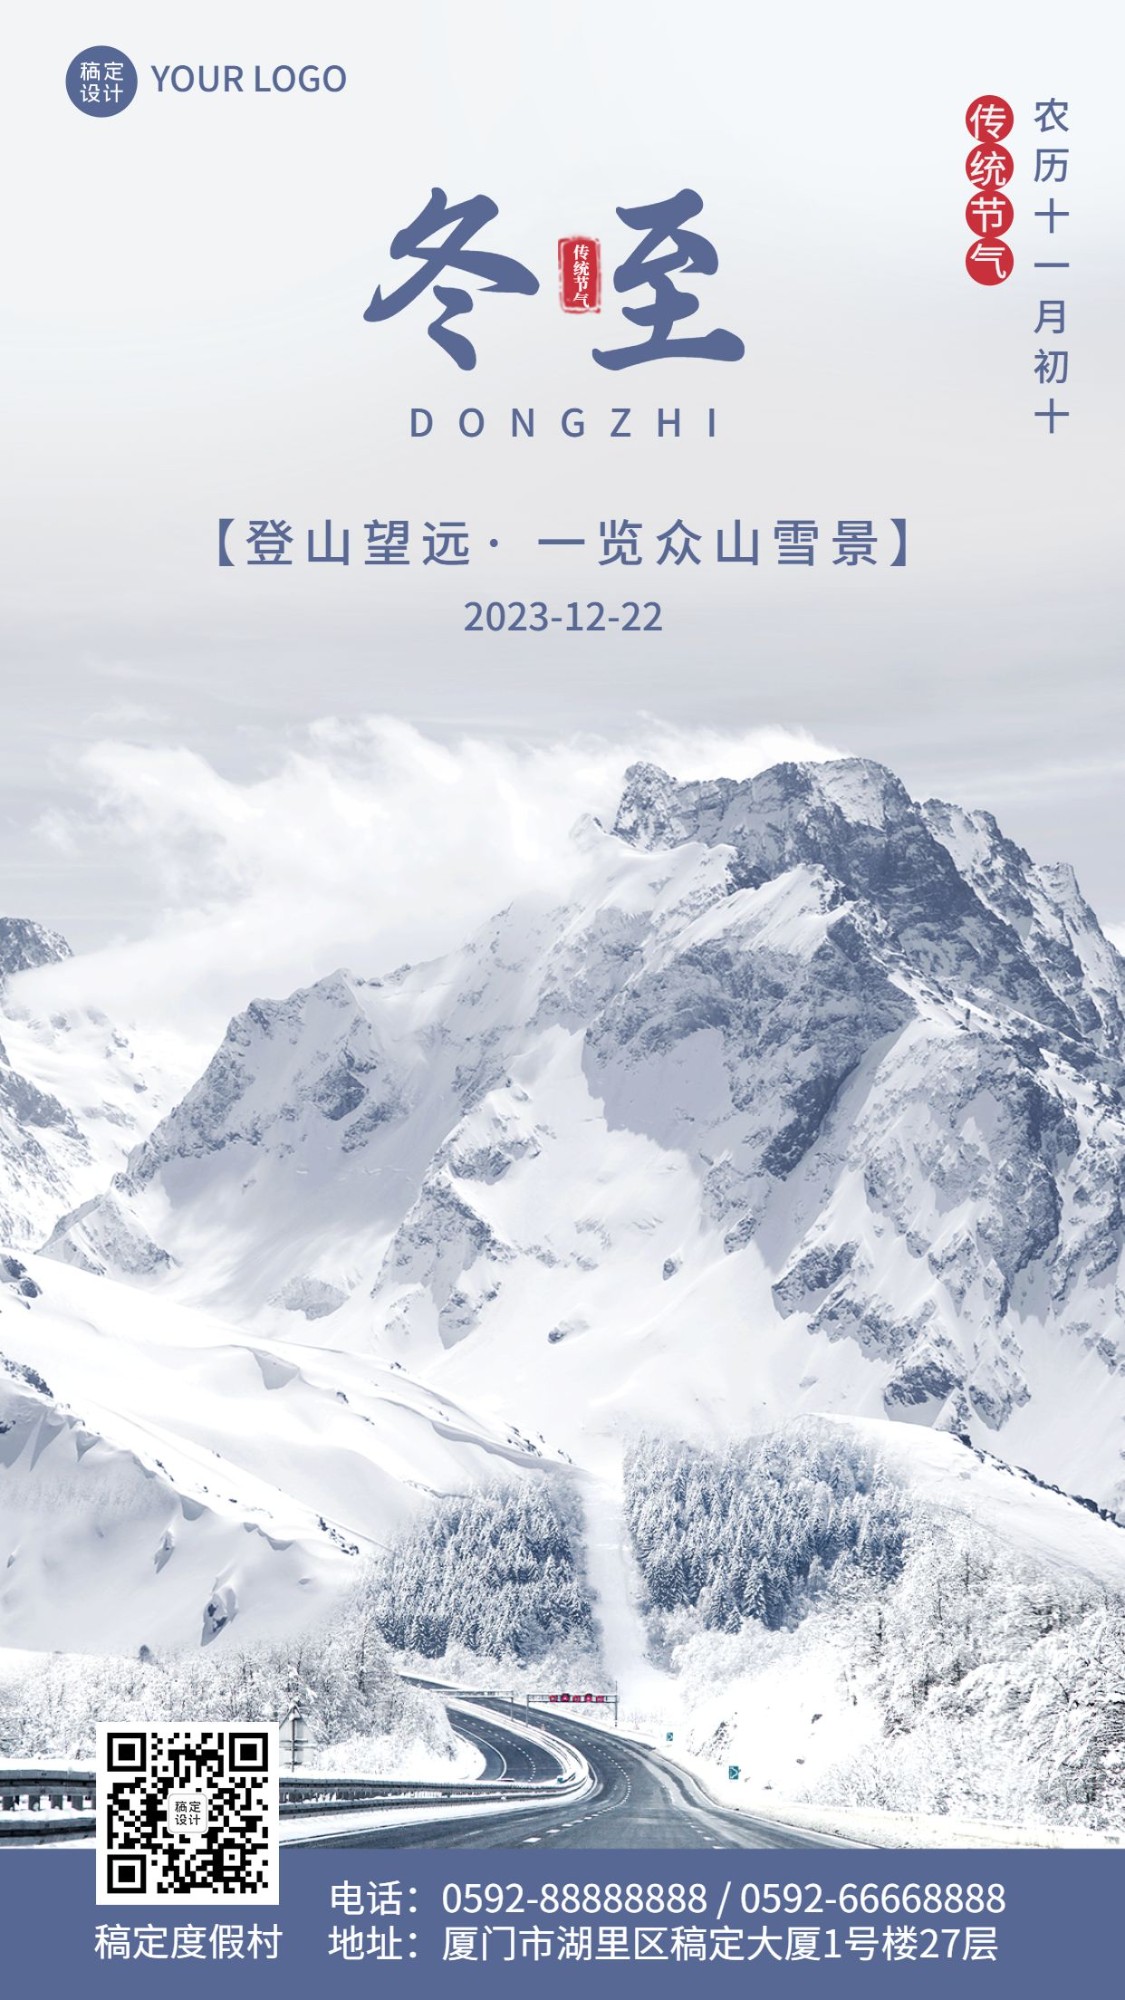 冬至旅游祝福雪山风景手机海报预览效果